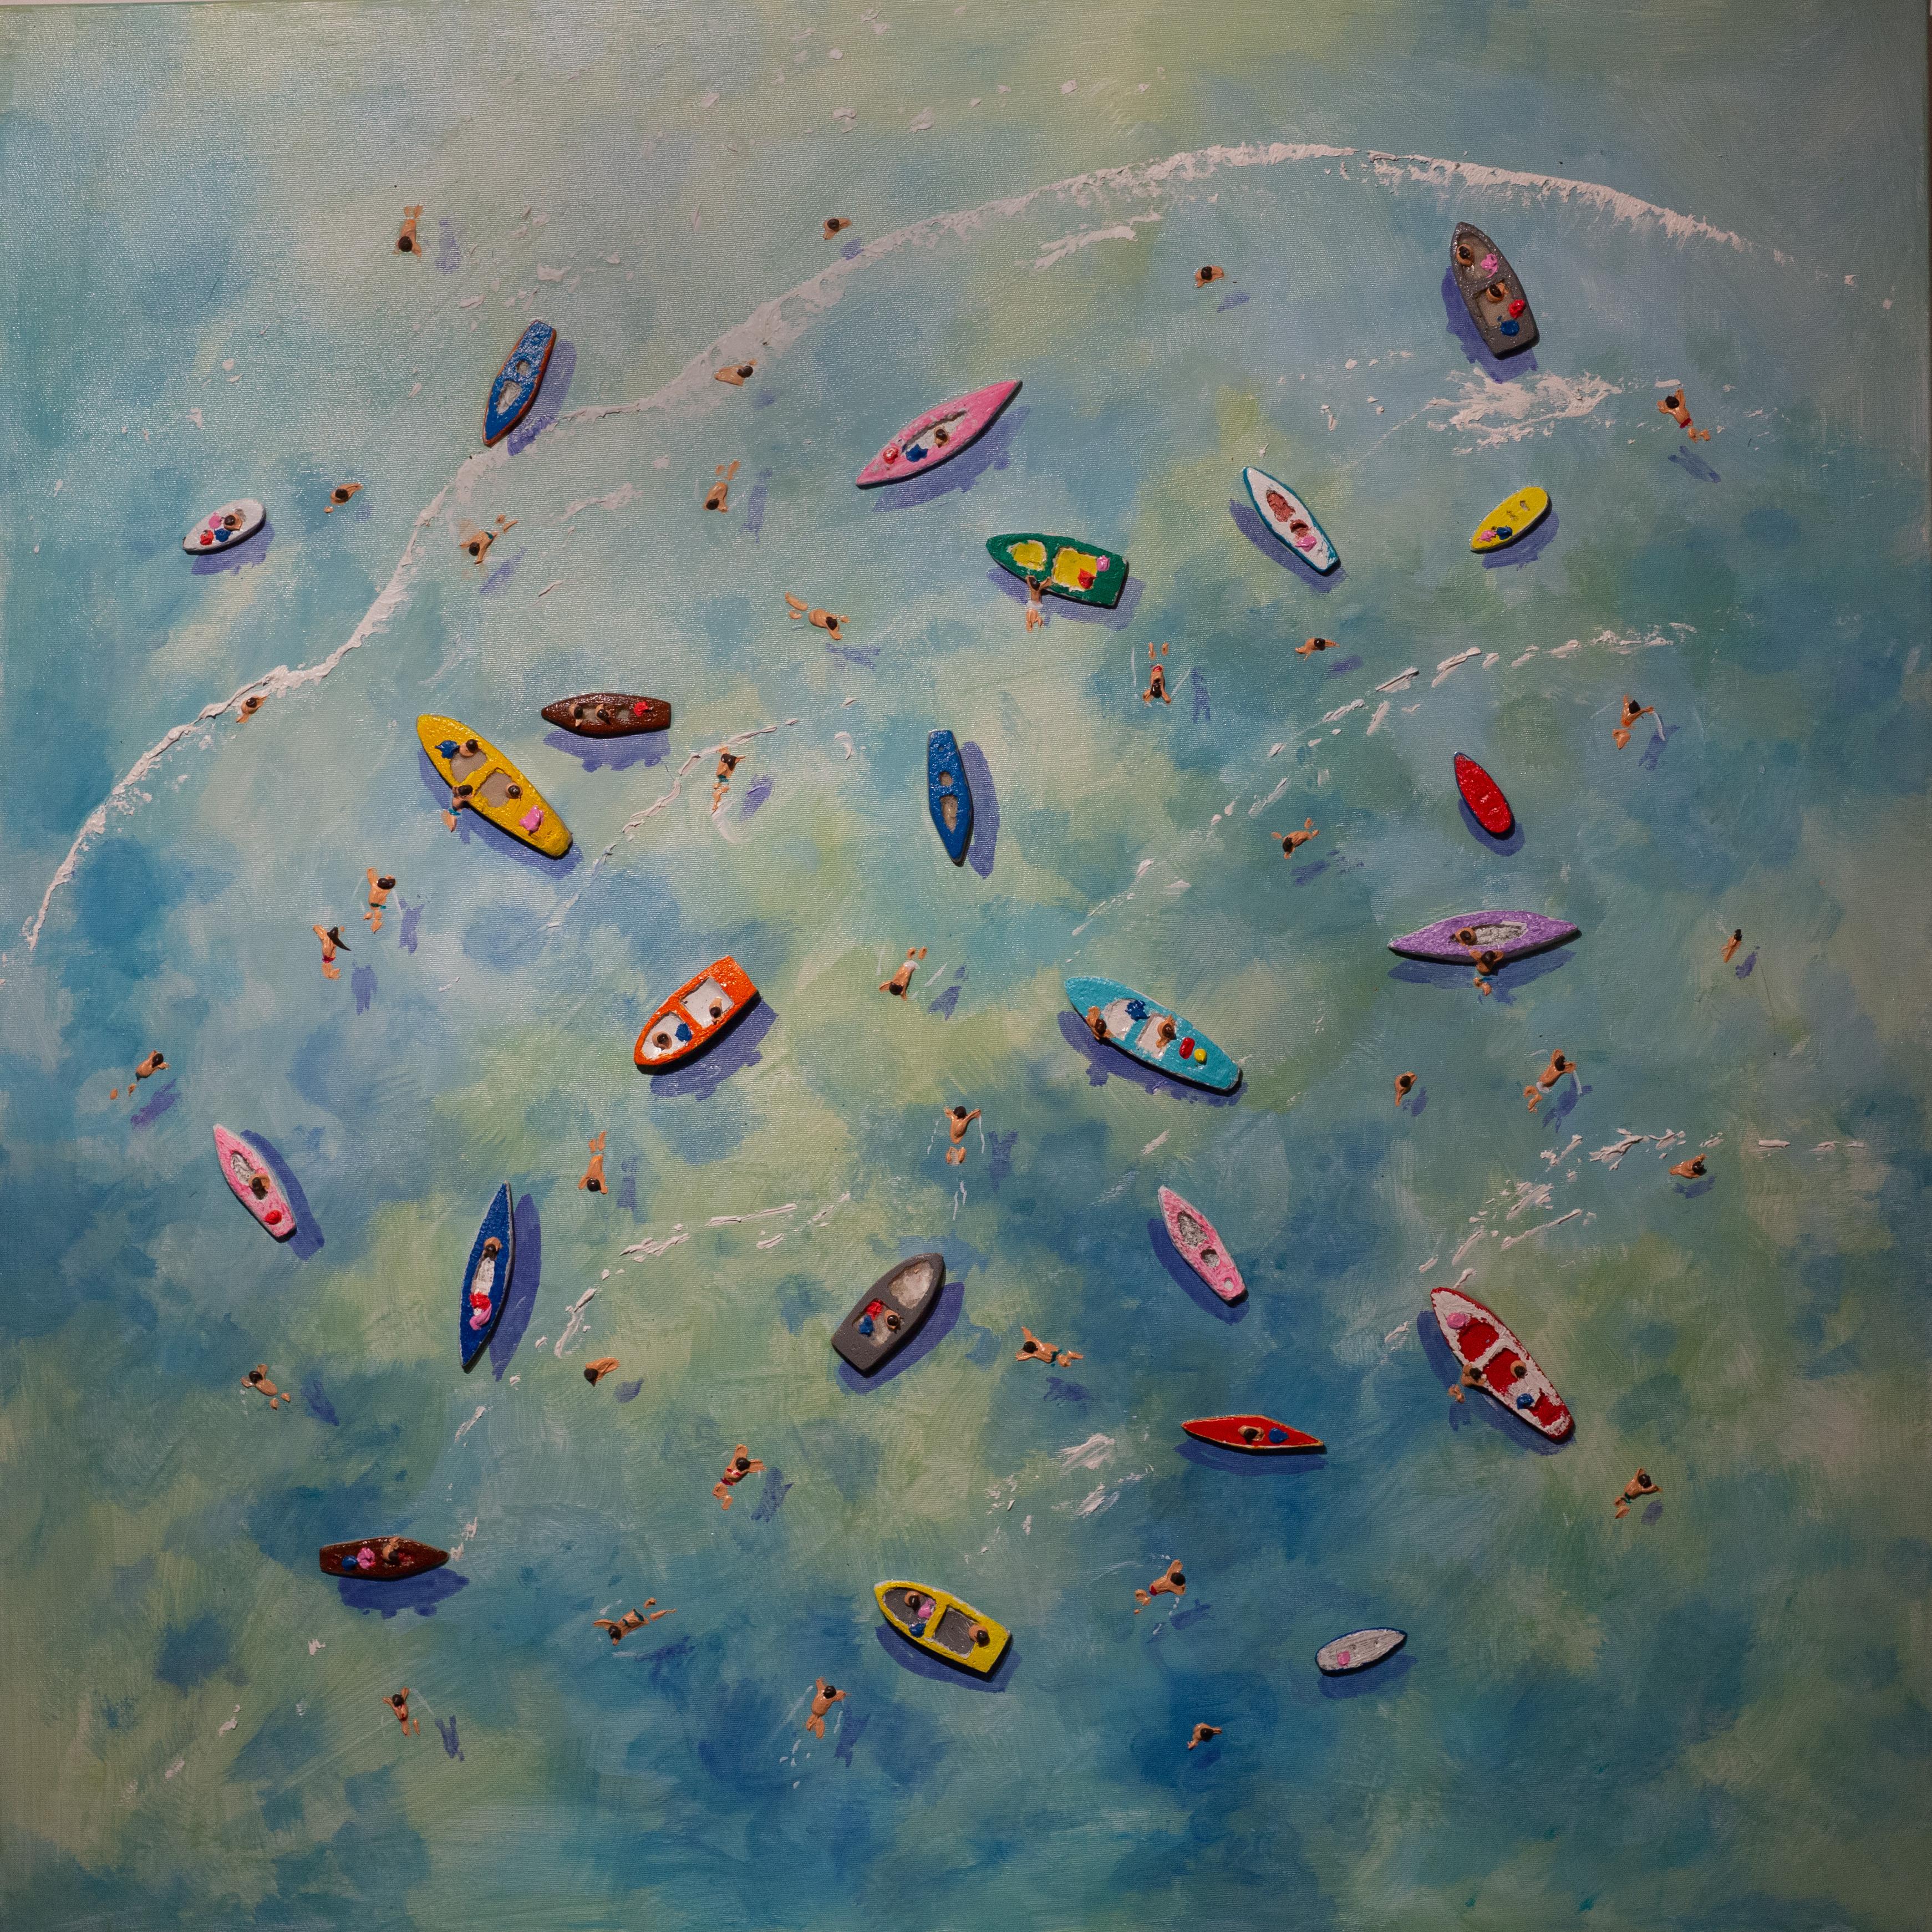 Landscape Painting Max Todd - « Staying Afloat » - Peinture contemporaine colorée en 3D de bateaux sur l'eau, bleu 